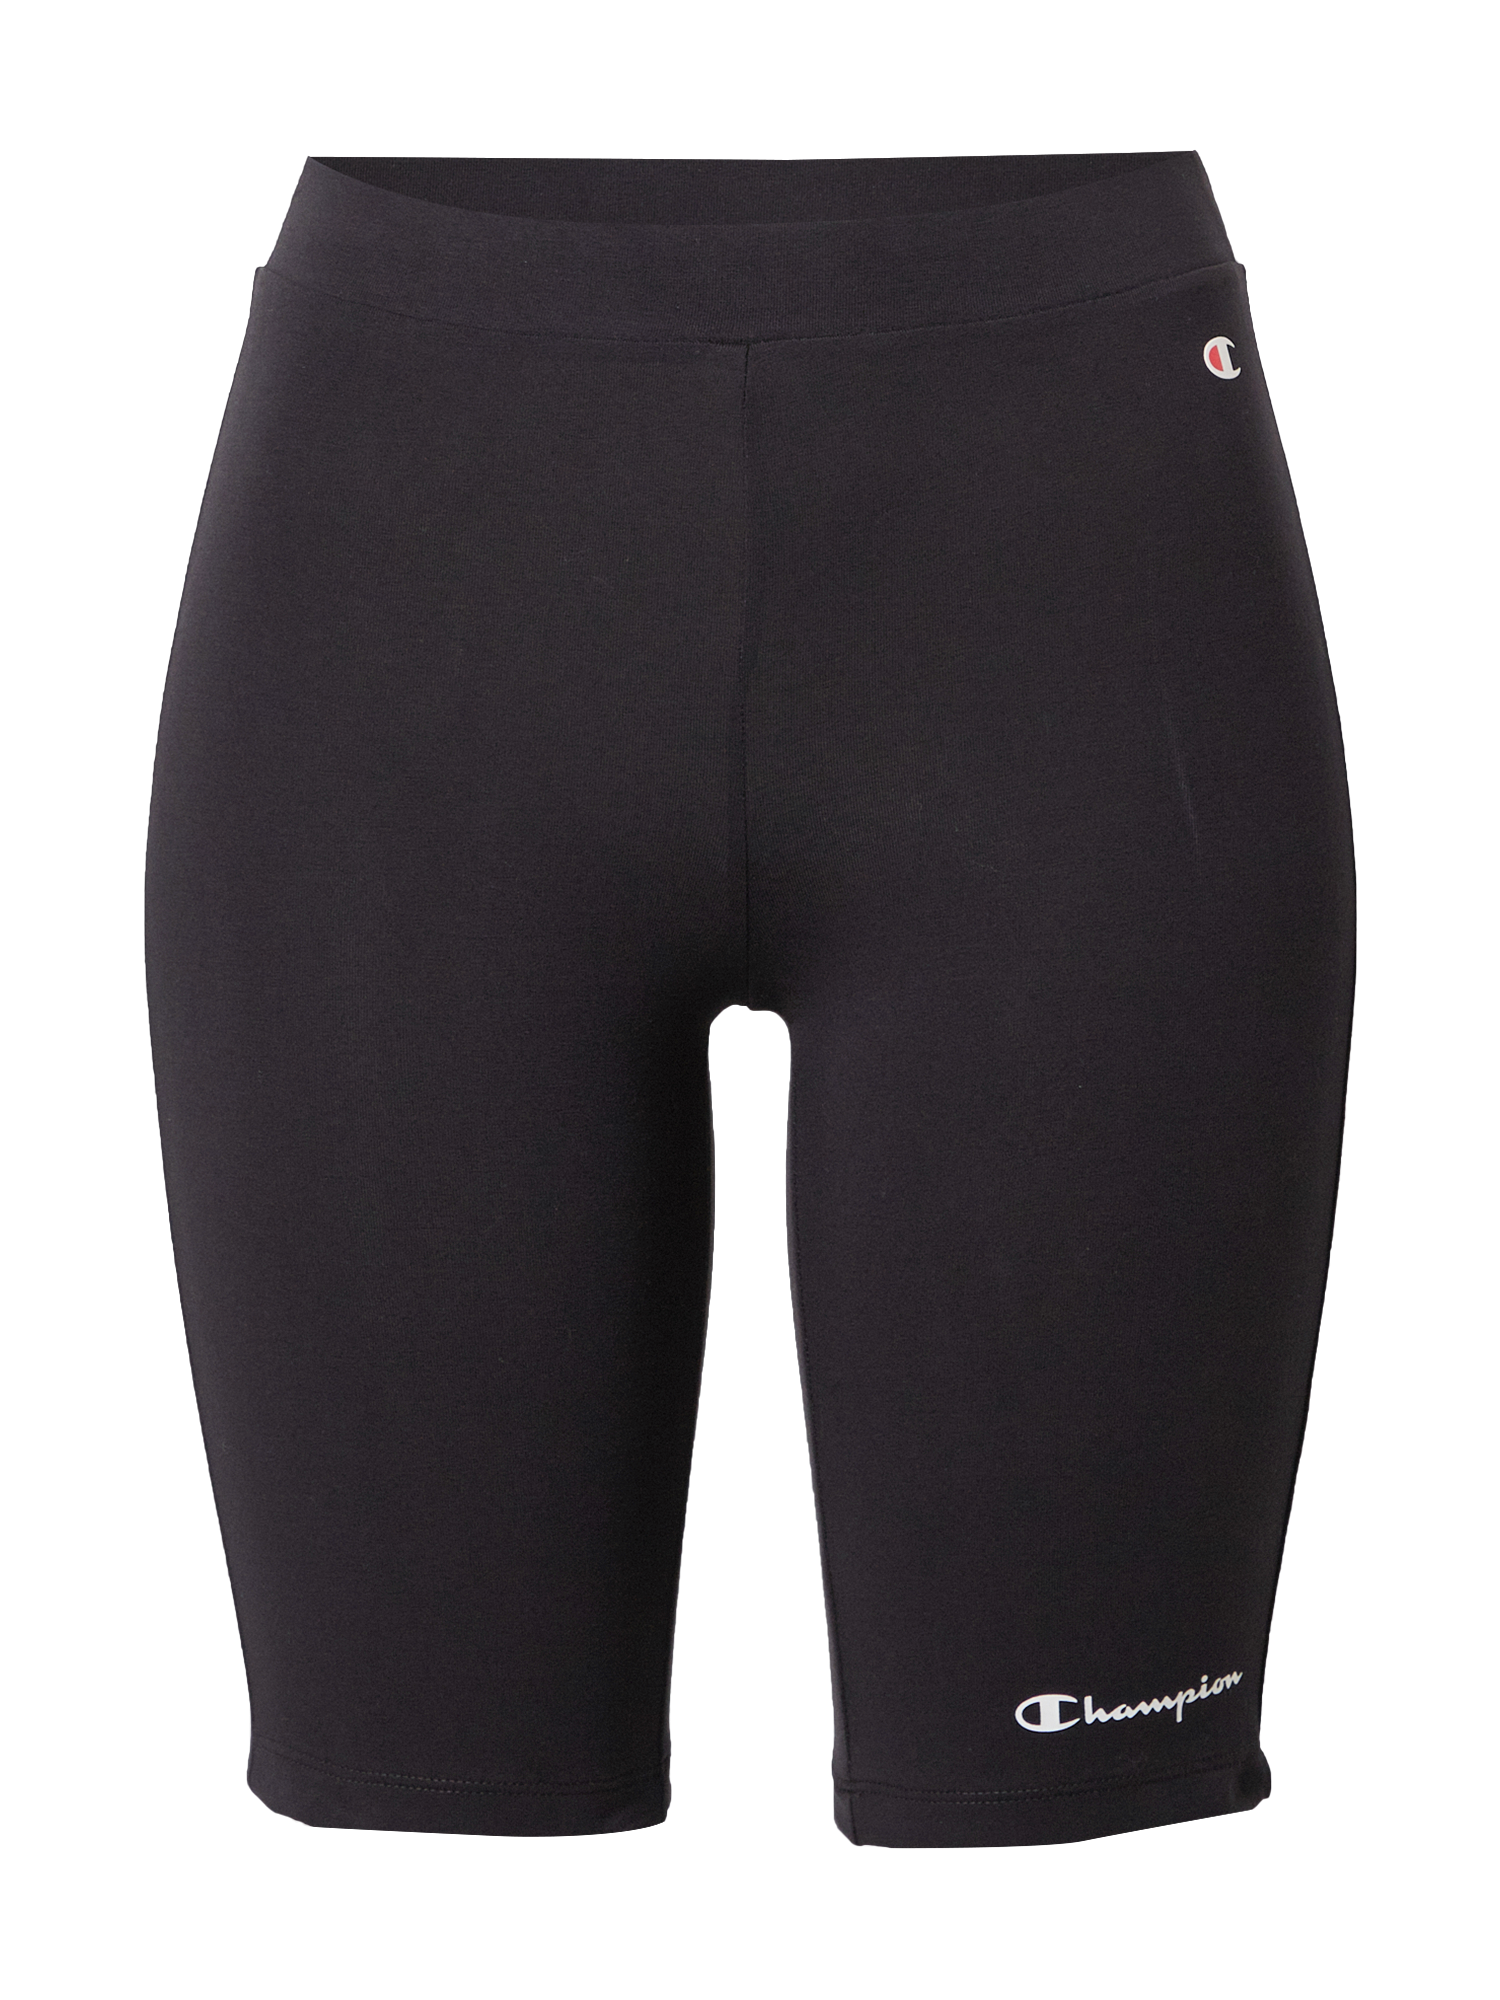 Kobiety ty0aQ Champion Authentic Athletic Apparel Spodnie sportowe w kolorze Czarnym 